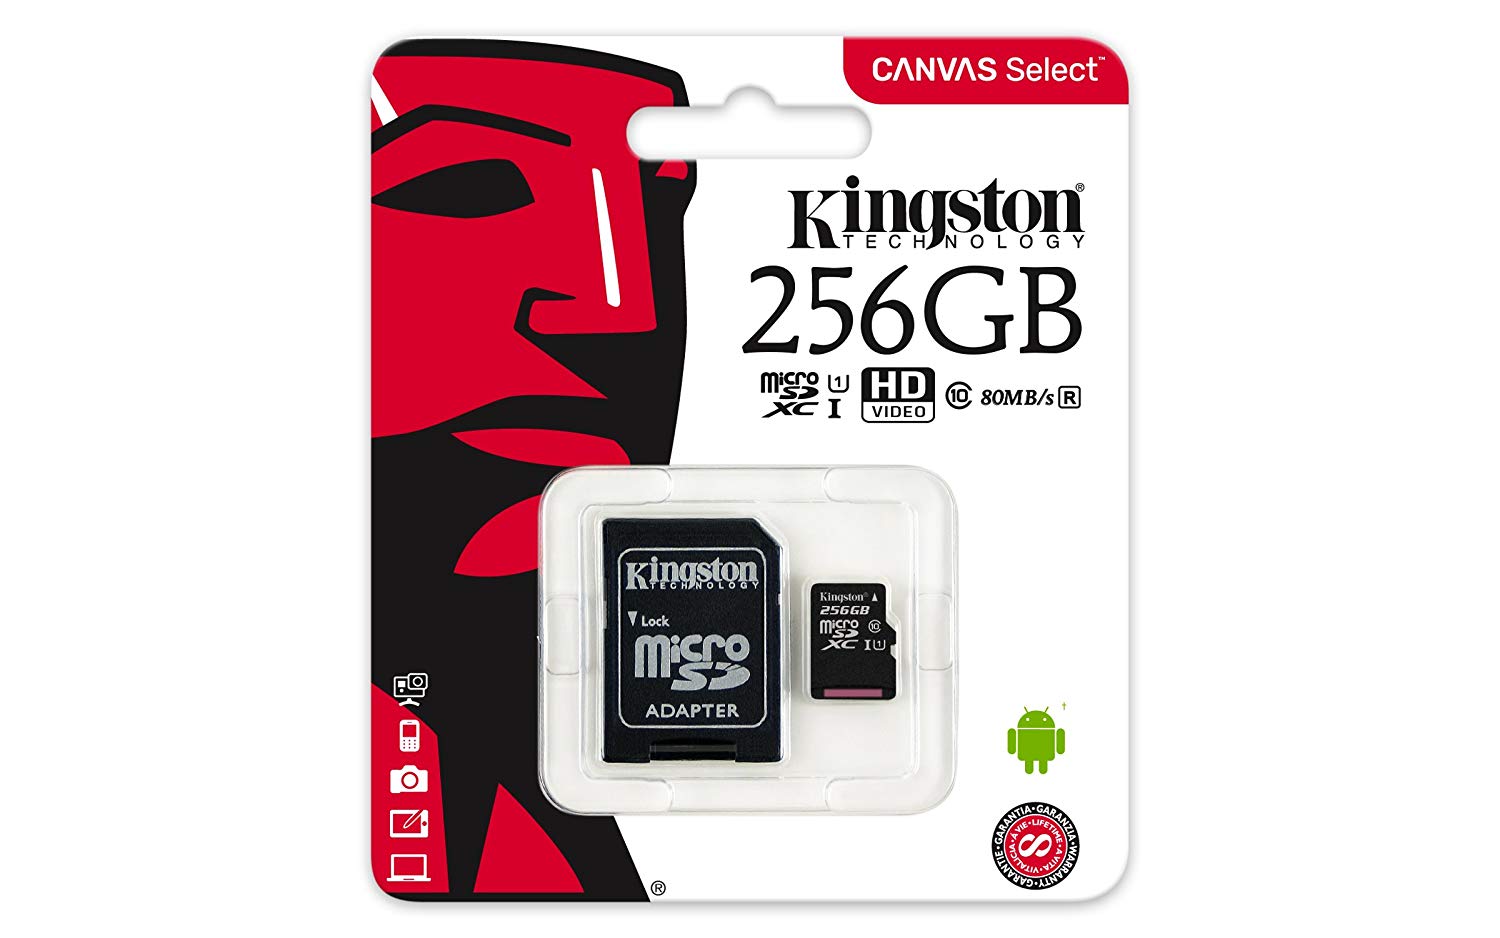 KINKSTON MICROSD 256GB SDCS2 CANVAS PLUS